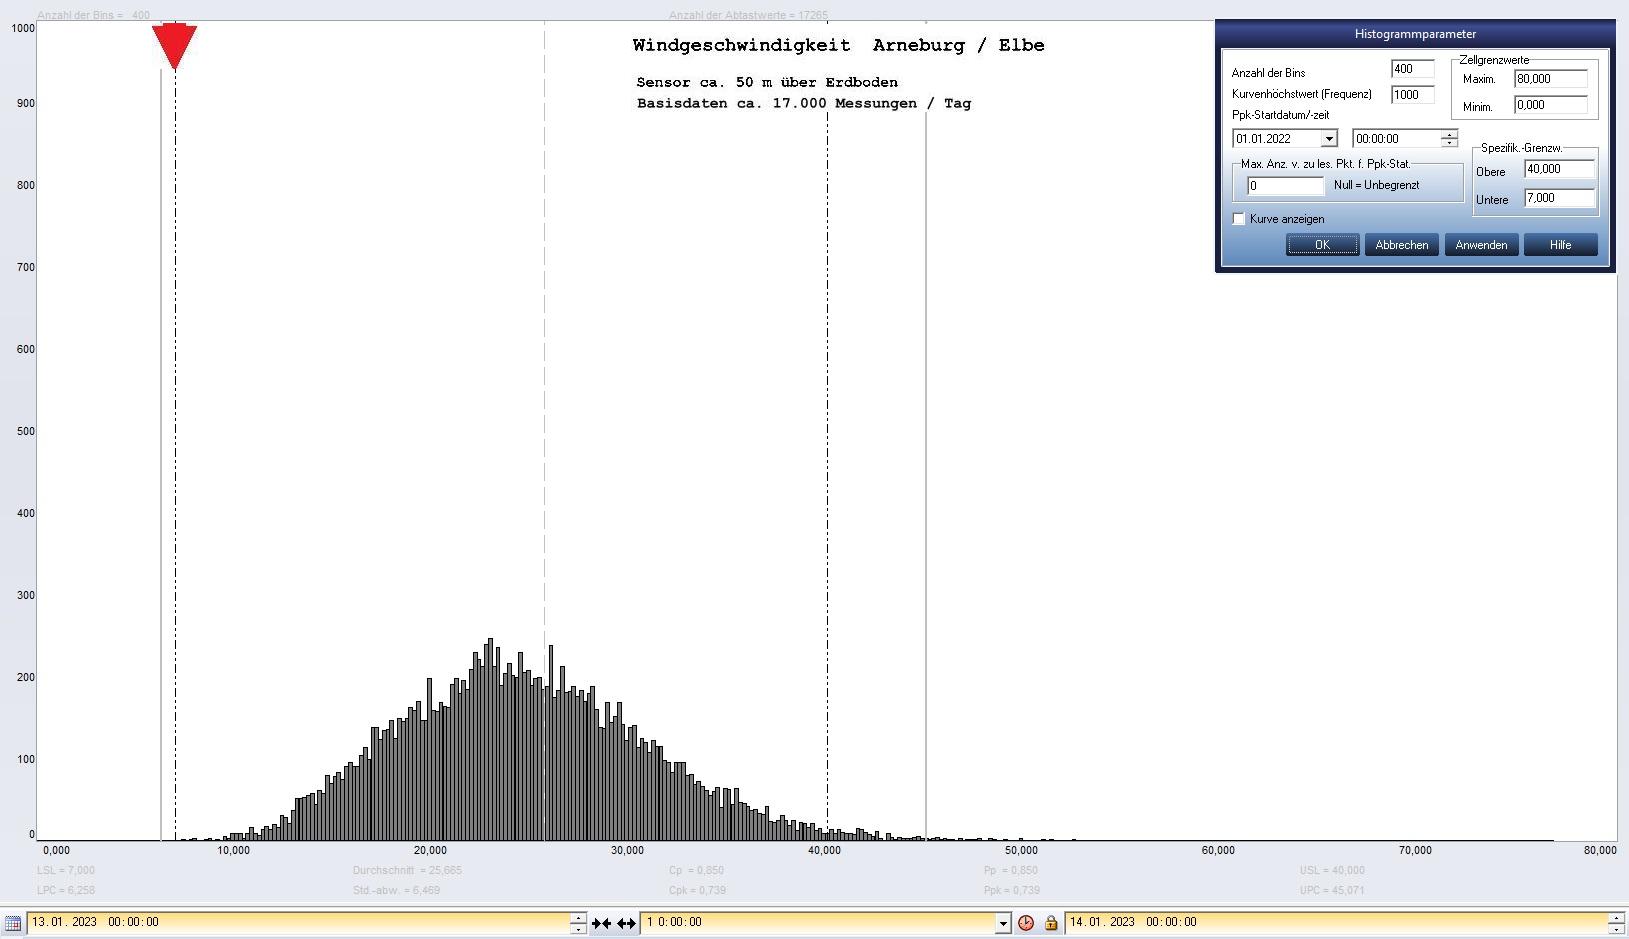 Arneburg Tages-Histogramm Winddaten, 13.01.2023
  Histogramm, Sensor auf Gebude, ca. 50 m ber Erdboden, Basis: 5s-Aufzeichnung